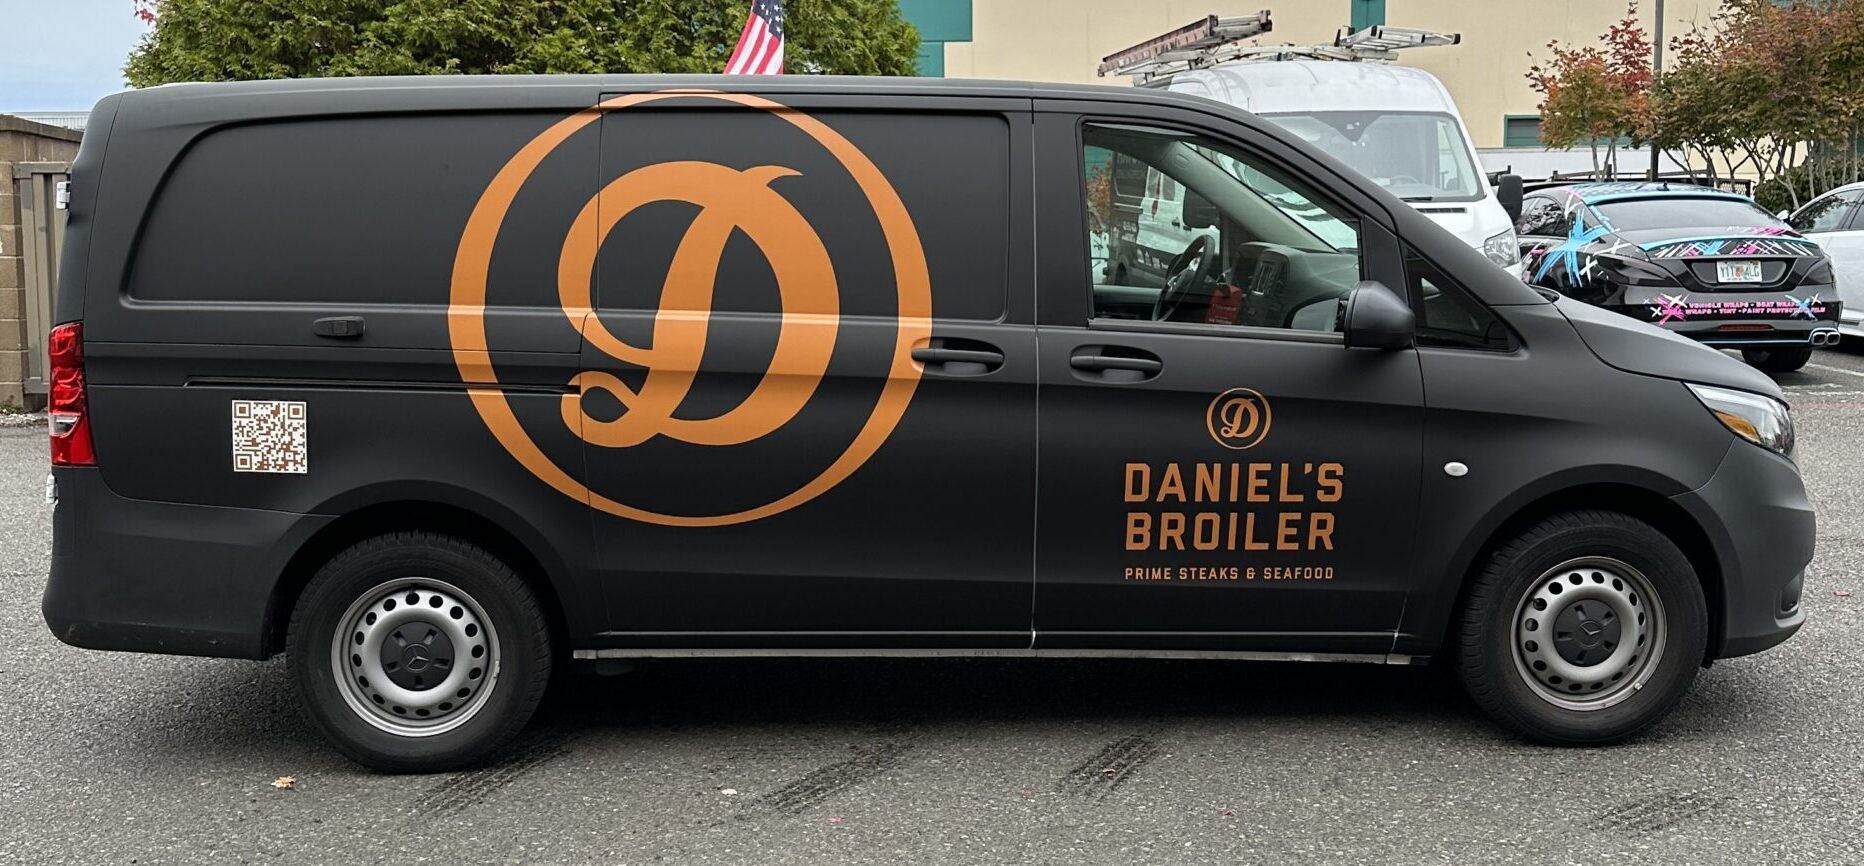 Daniel's Broiler Vehicle Wrap